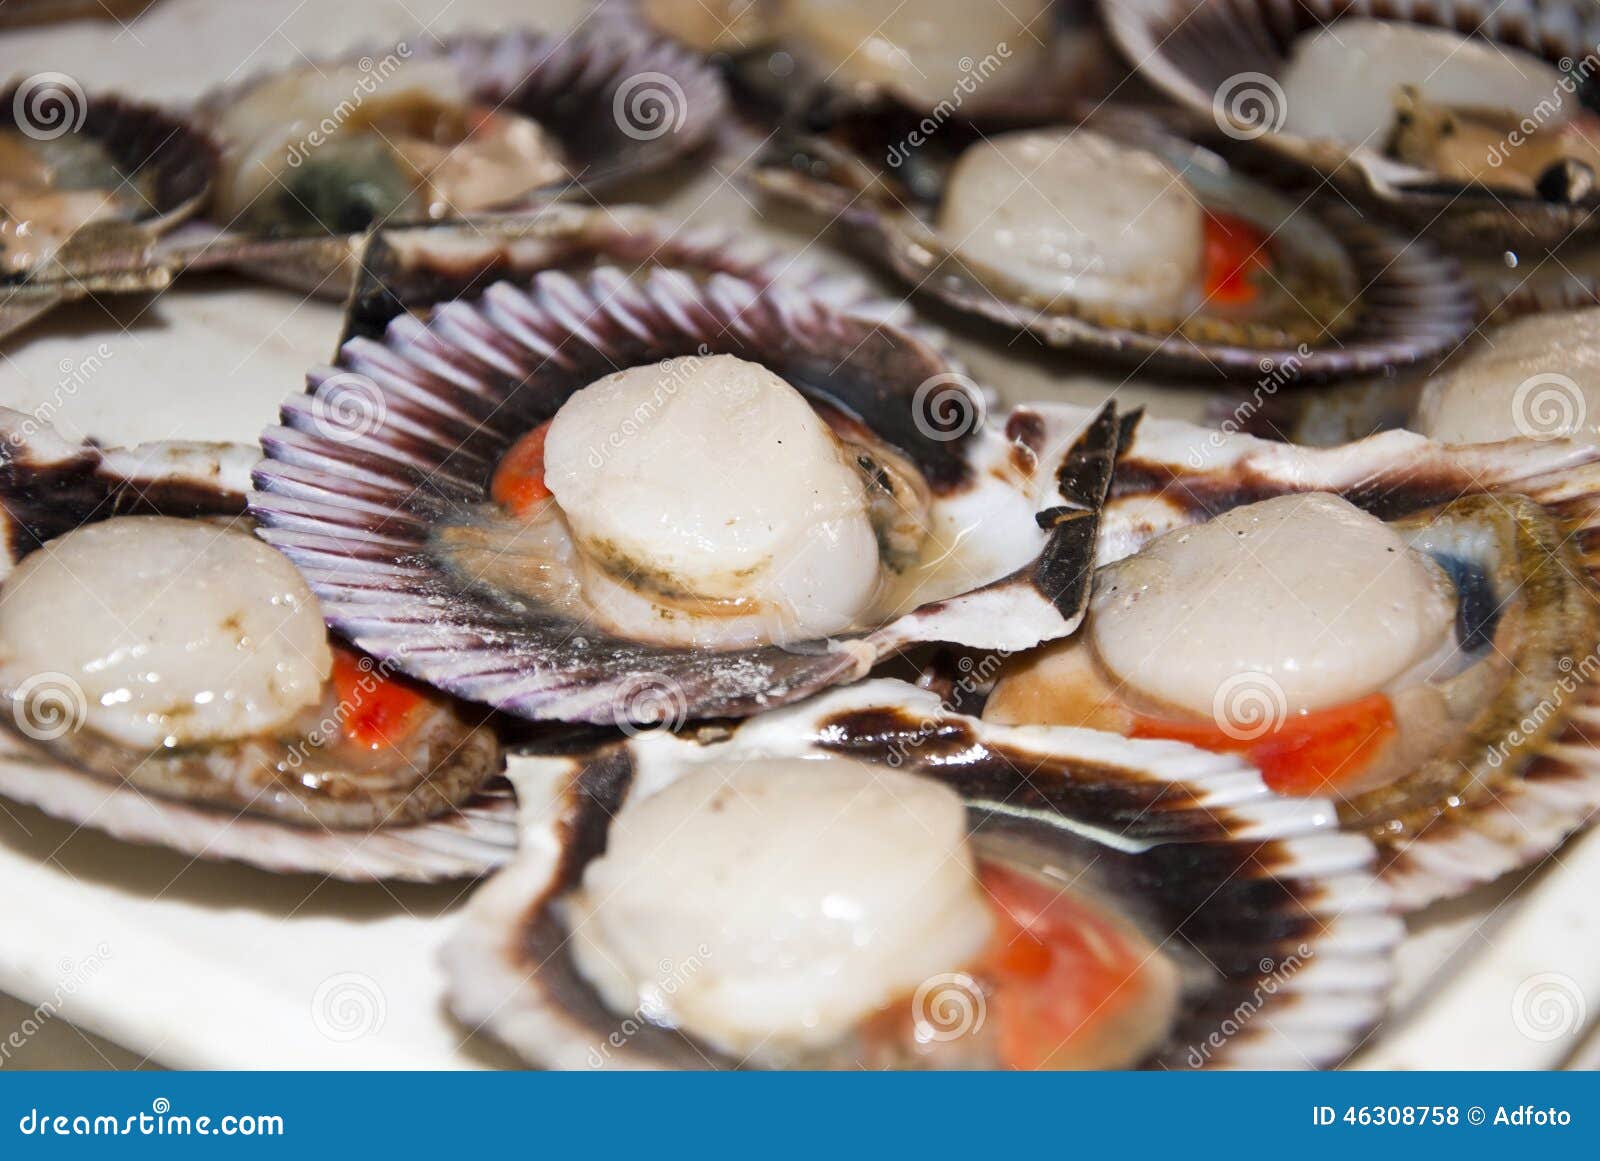 Какие на вкус гребешки. Морепродукты в ракушках. Морской гребешок блюдо. Виды морепродуктов в ракушках. Морепродукты в раковинах названия.